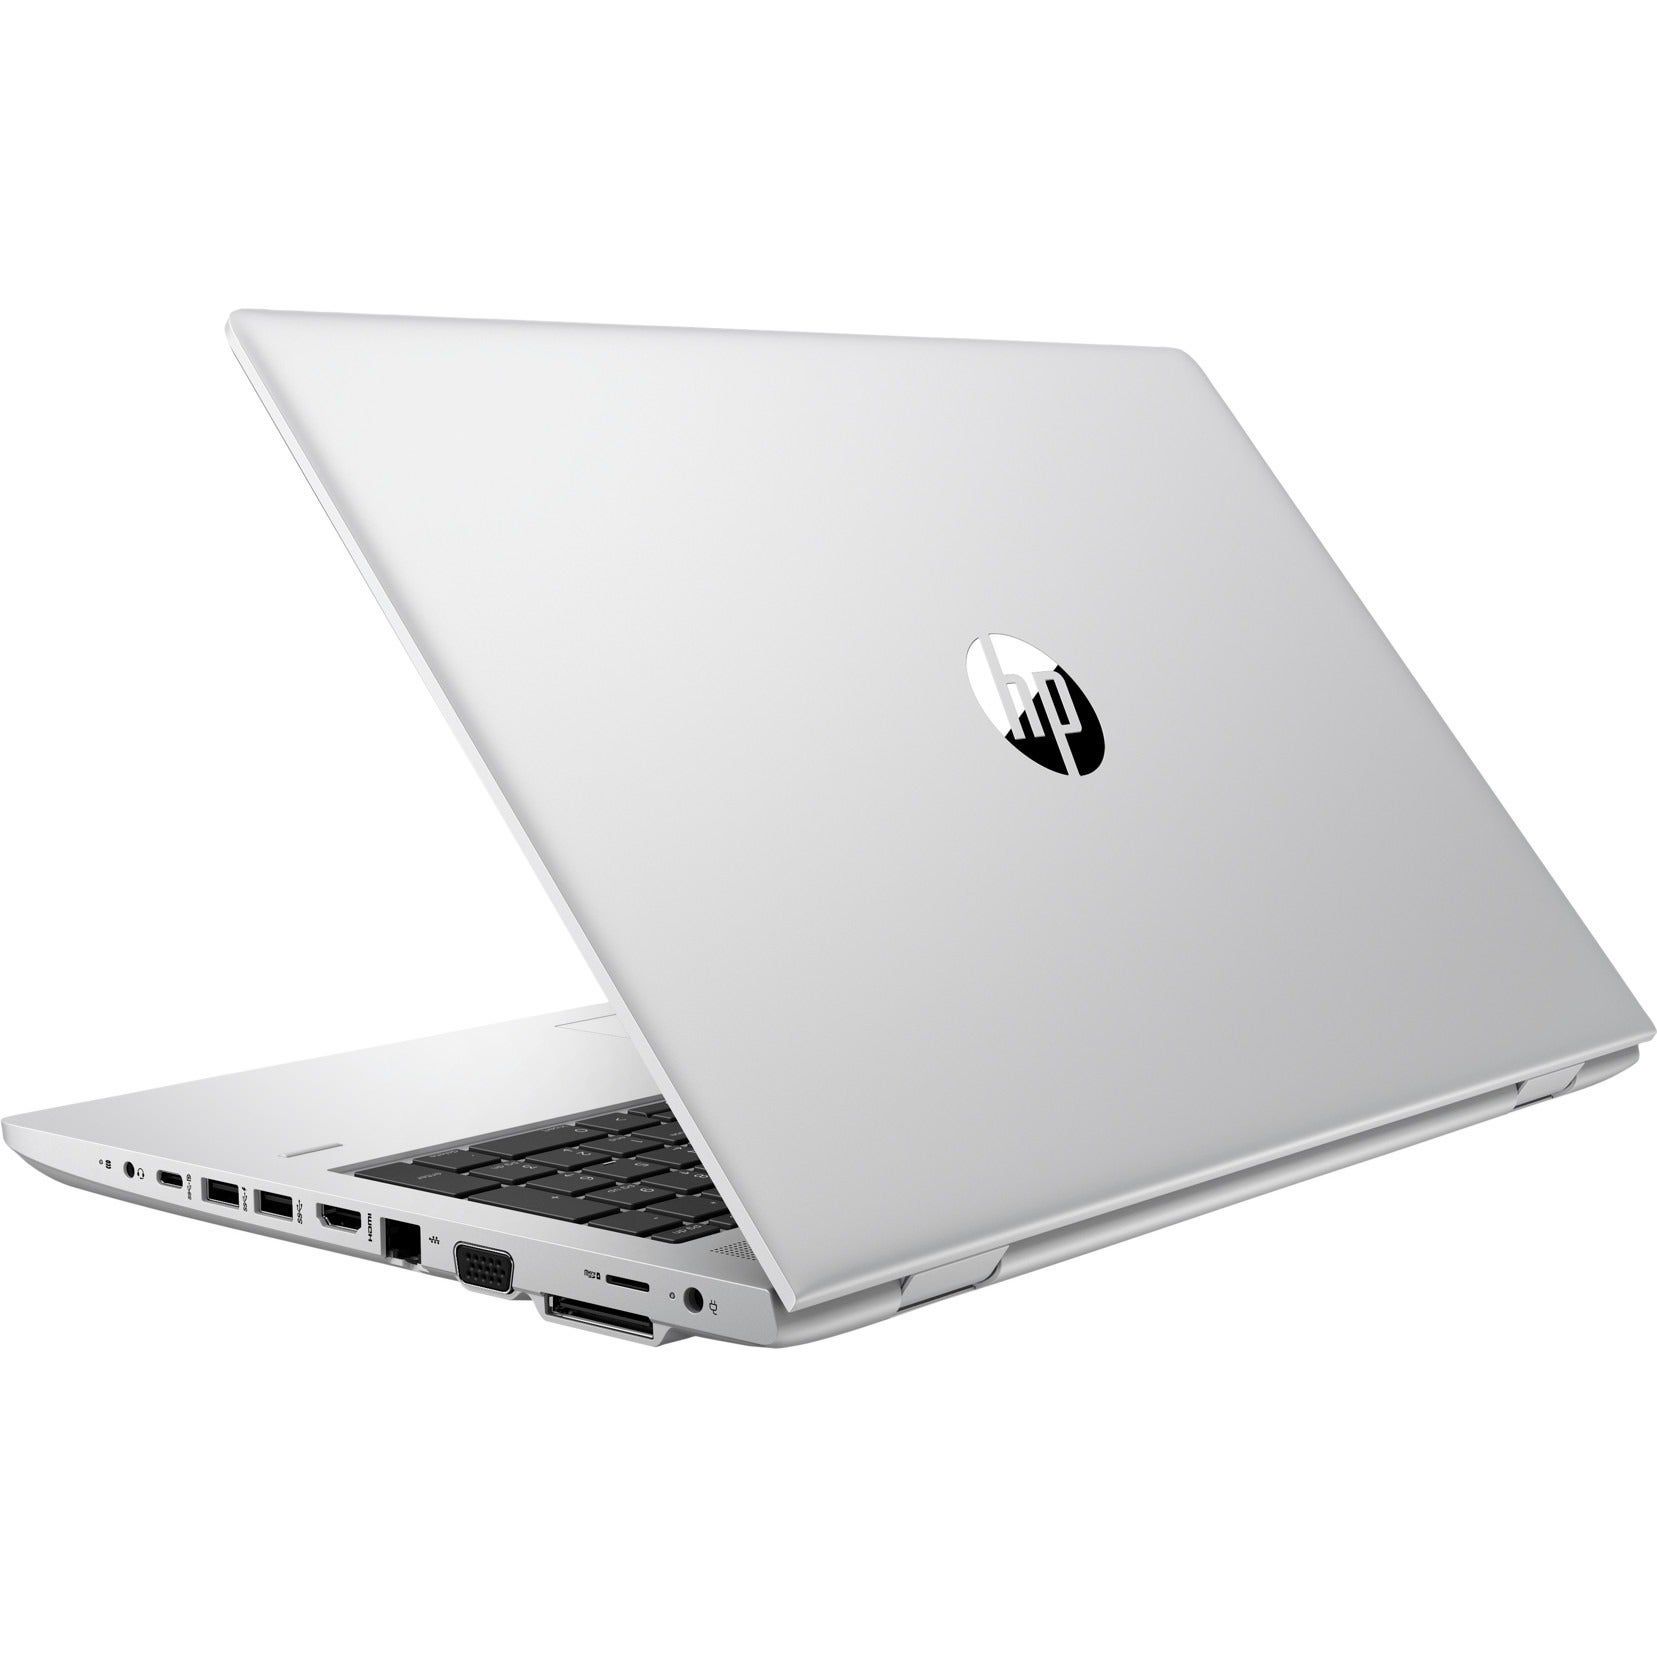 Mua laptop 5-6 triệu đáp ứng tiêu chí: Rẻ - Bền - Đẹp